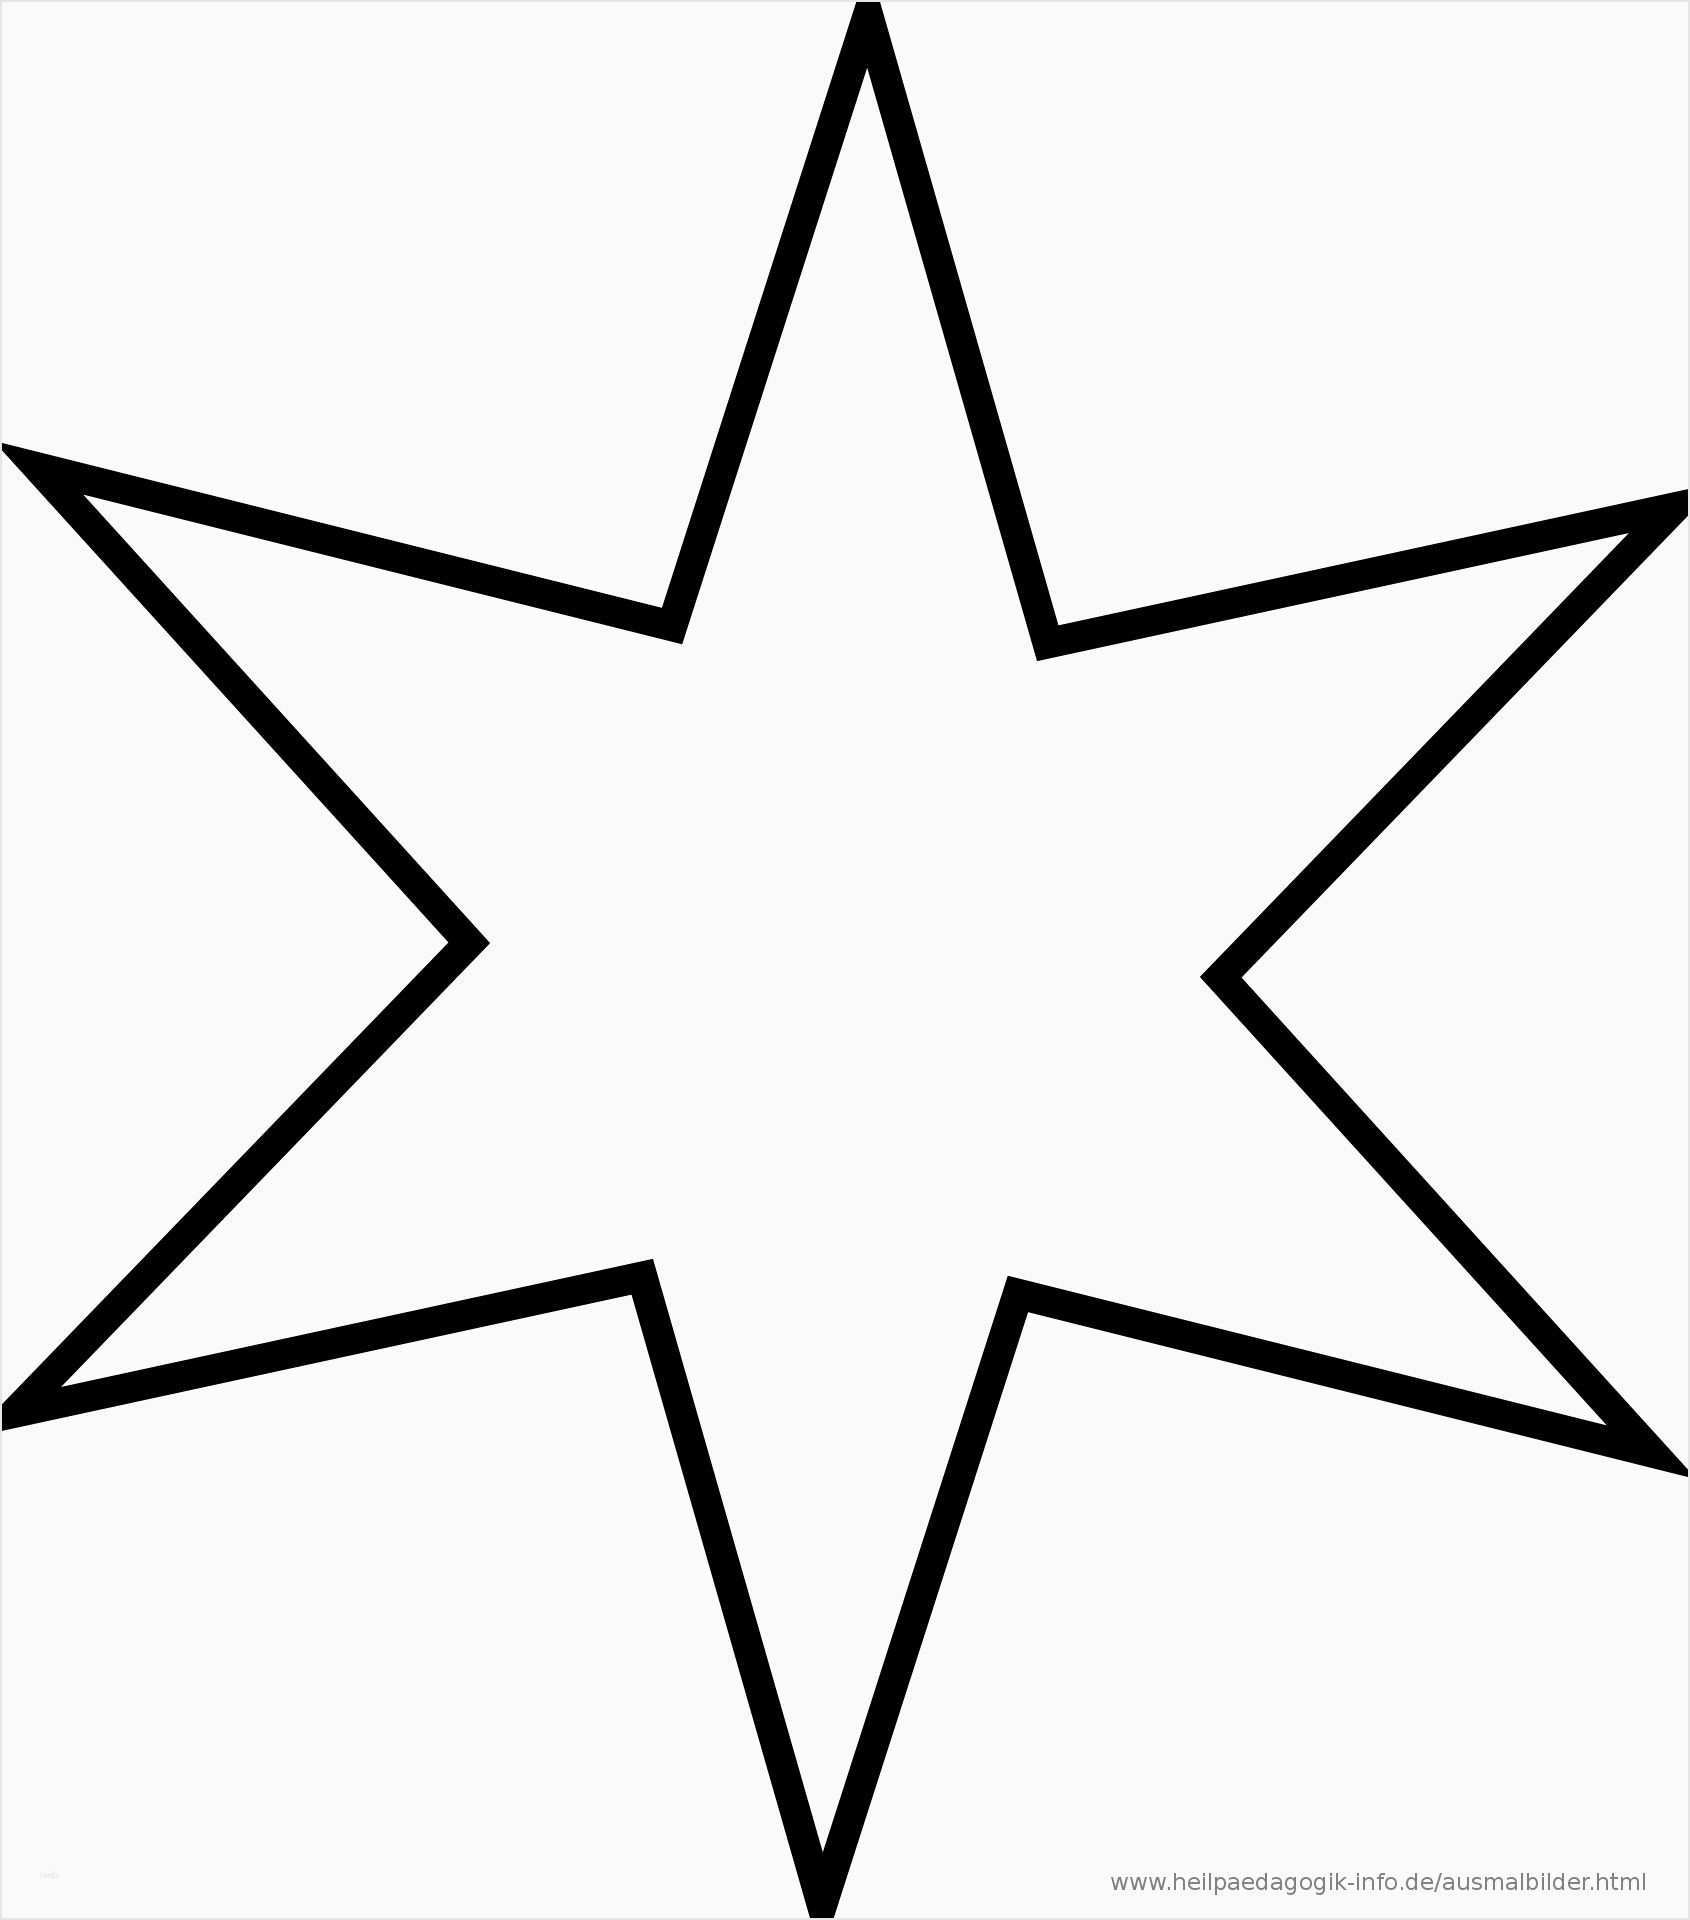 Ausmalbilder Sternschnuppe Einzigartig Stern Vorlage Zum Ausdrucken For Druckvorlage Stern Cosmixproject Sterne Zum Ausdrucken Malvorlage Stern Vorlage Stern